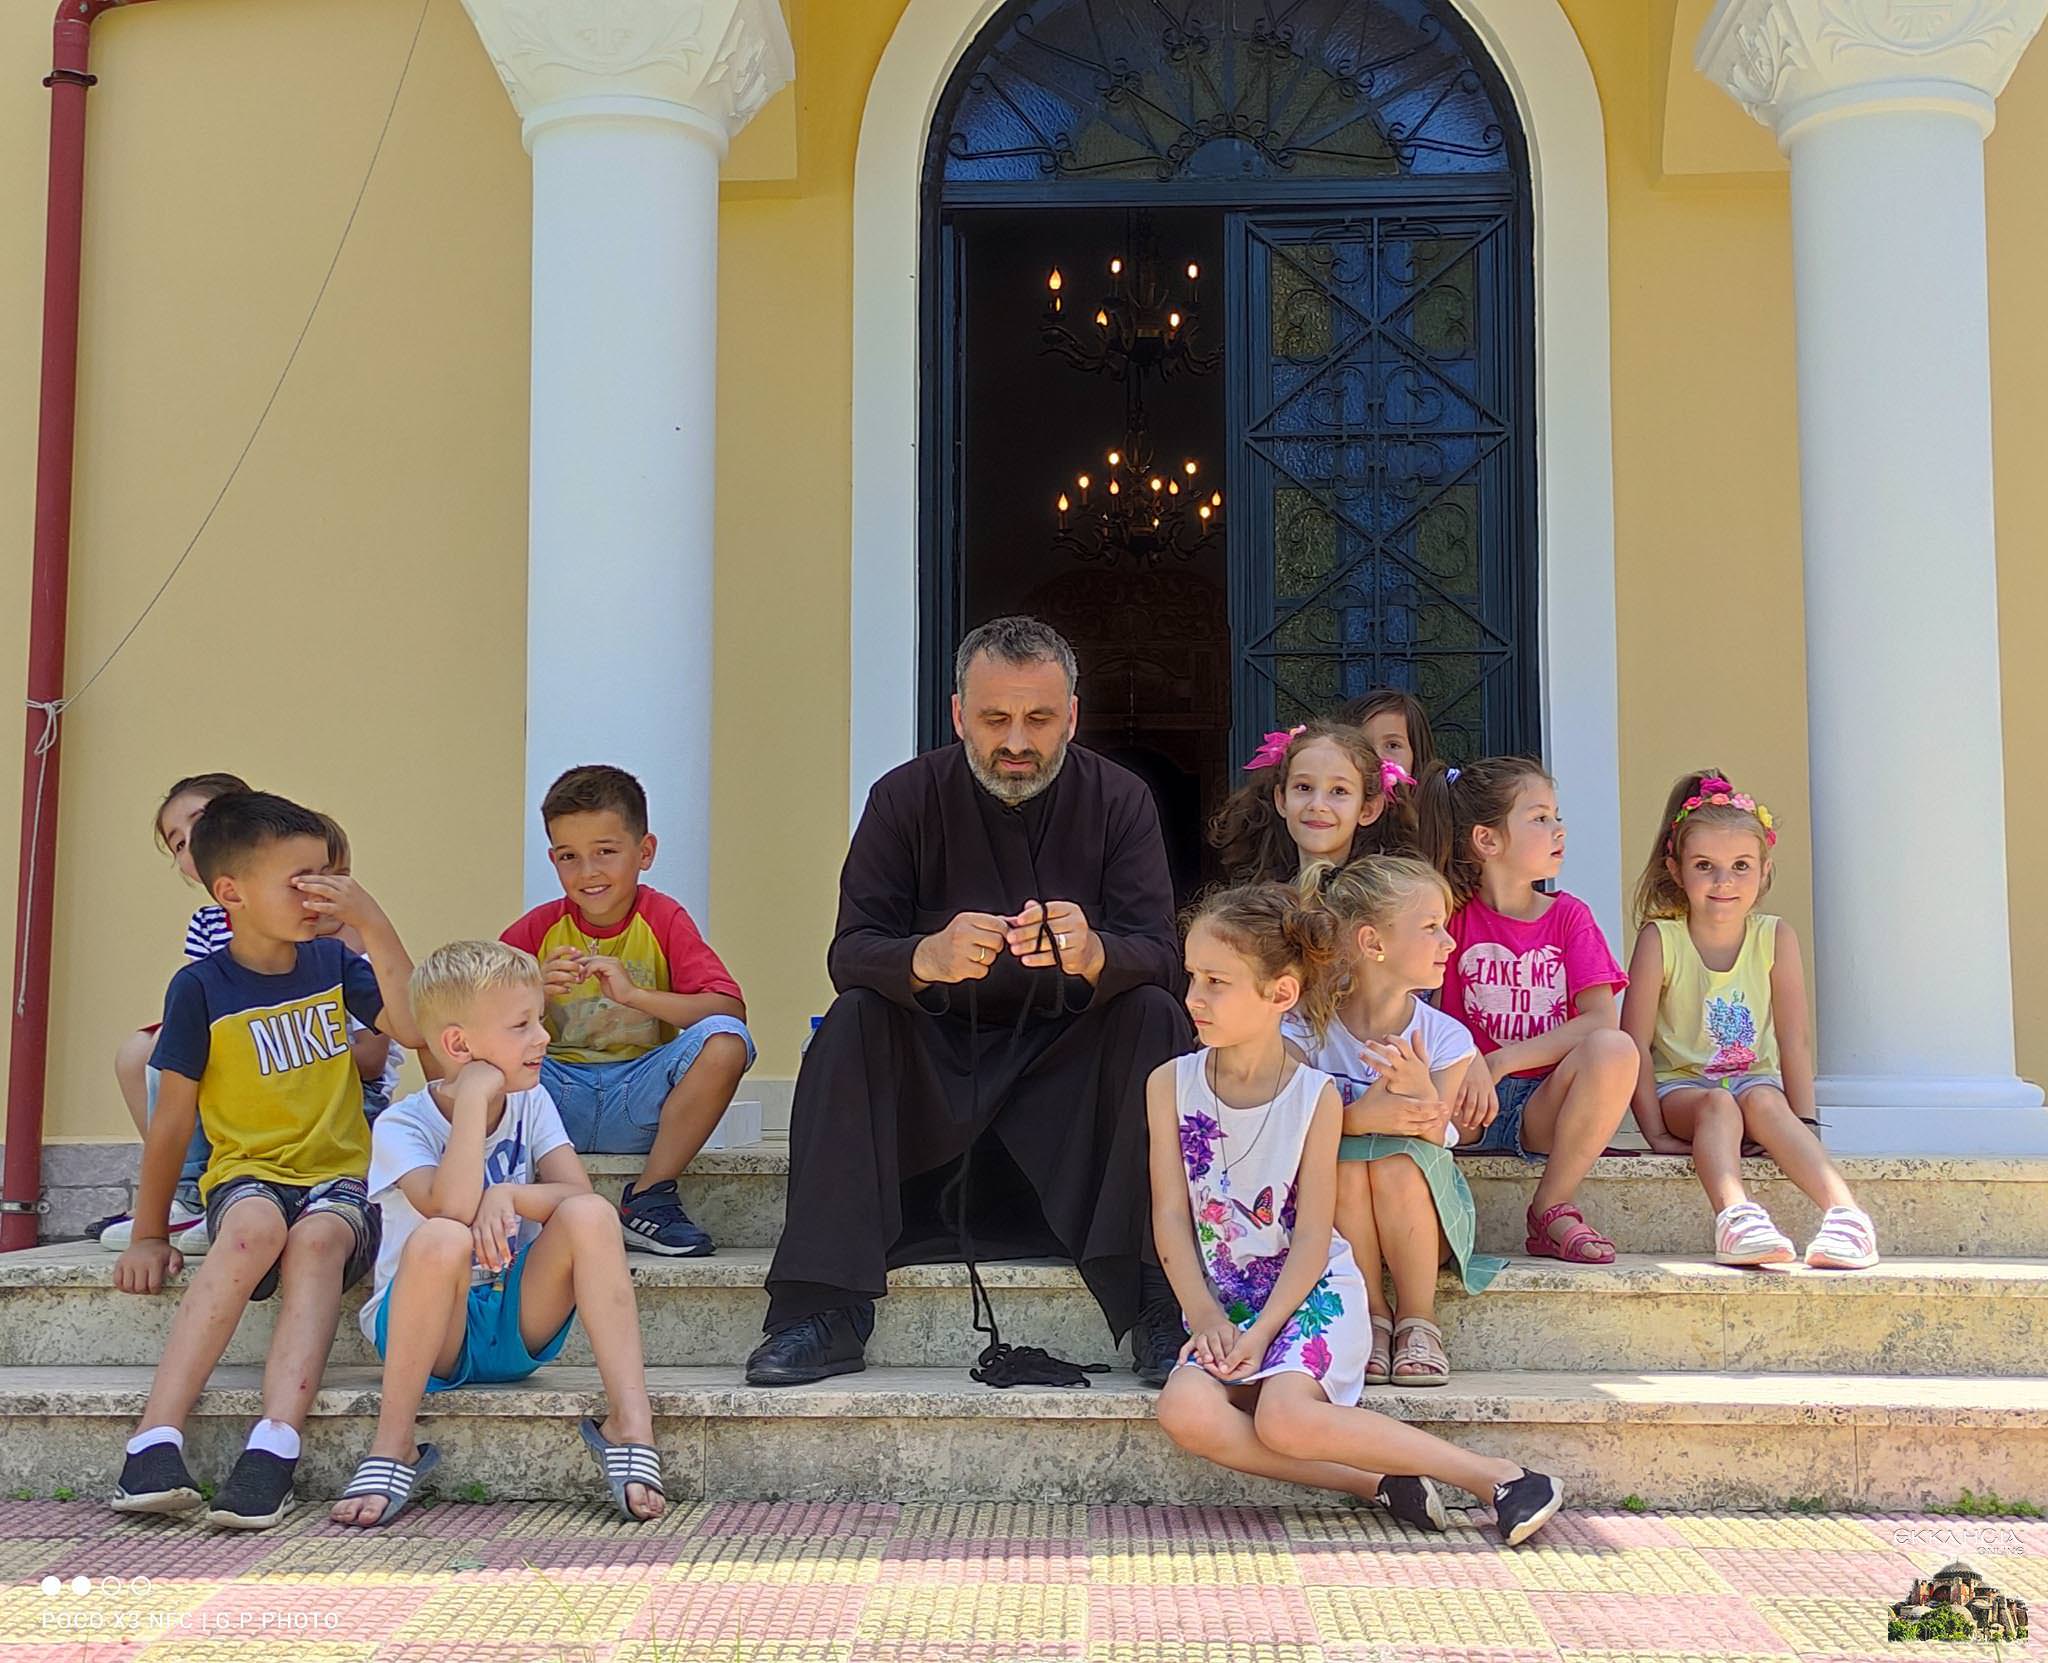 Κατασκηνώσεις στην Ορθόδοξη Εκκλησία της Αλβανίας